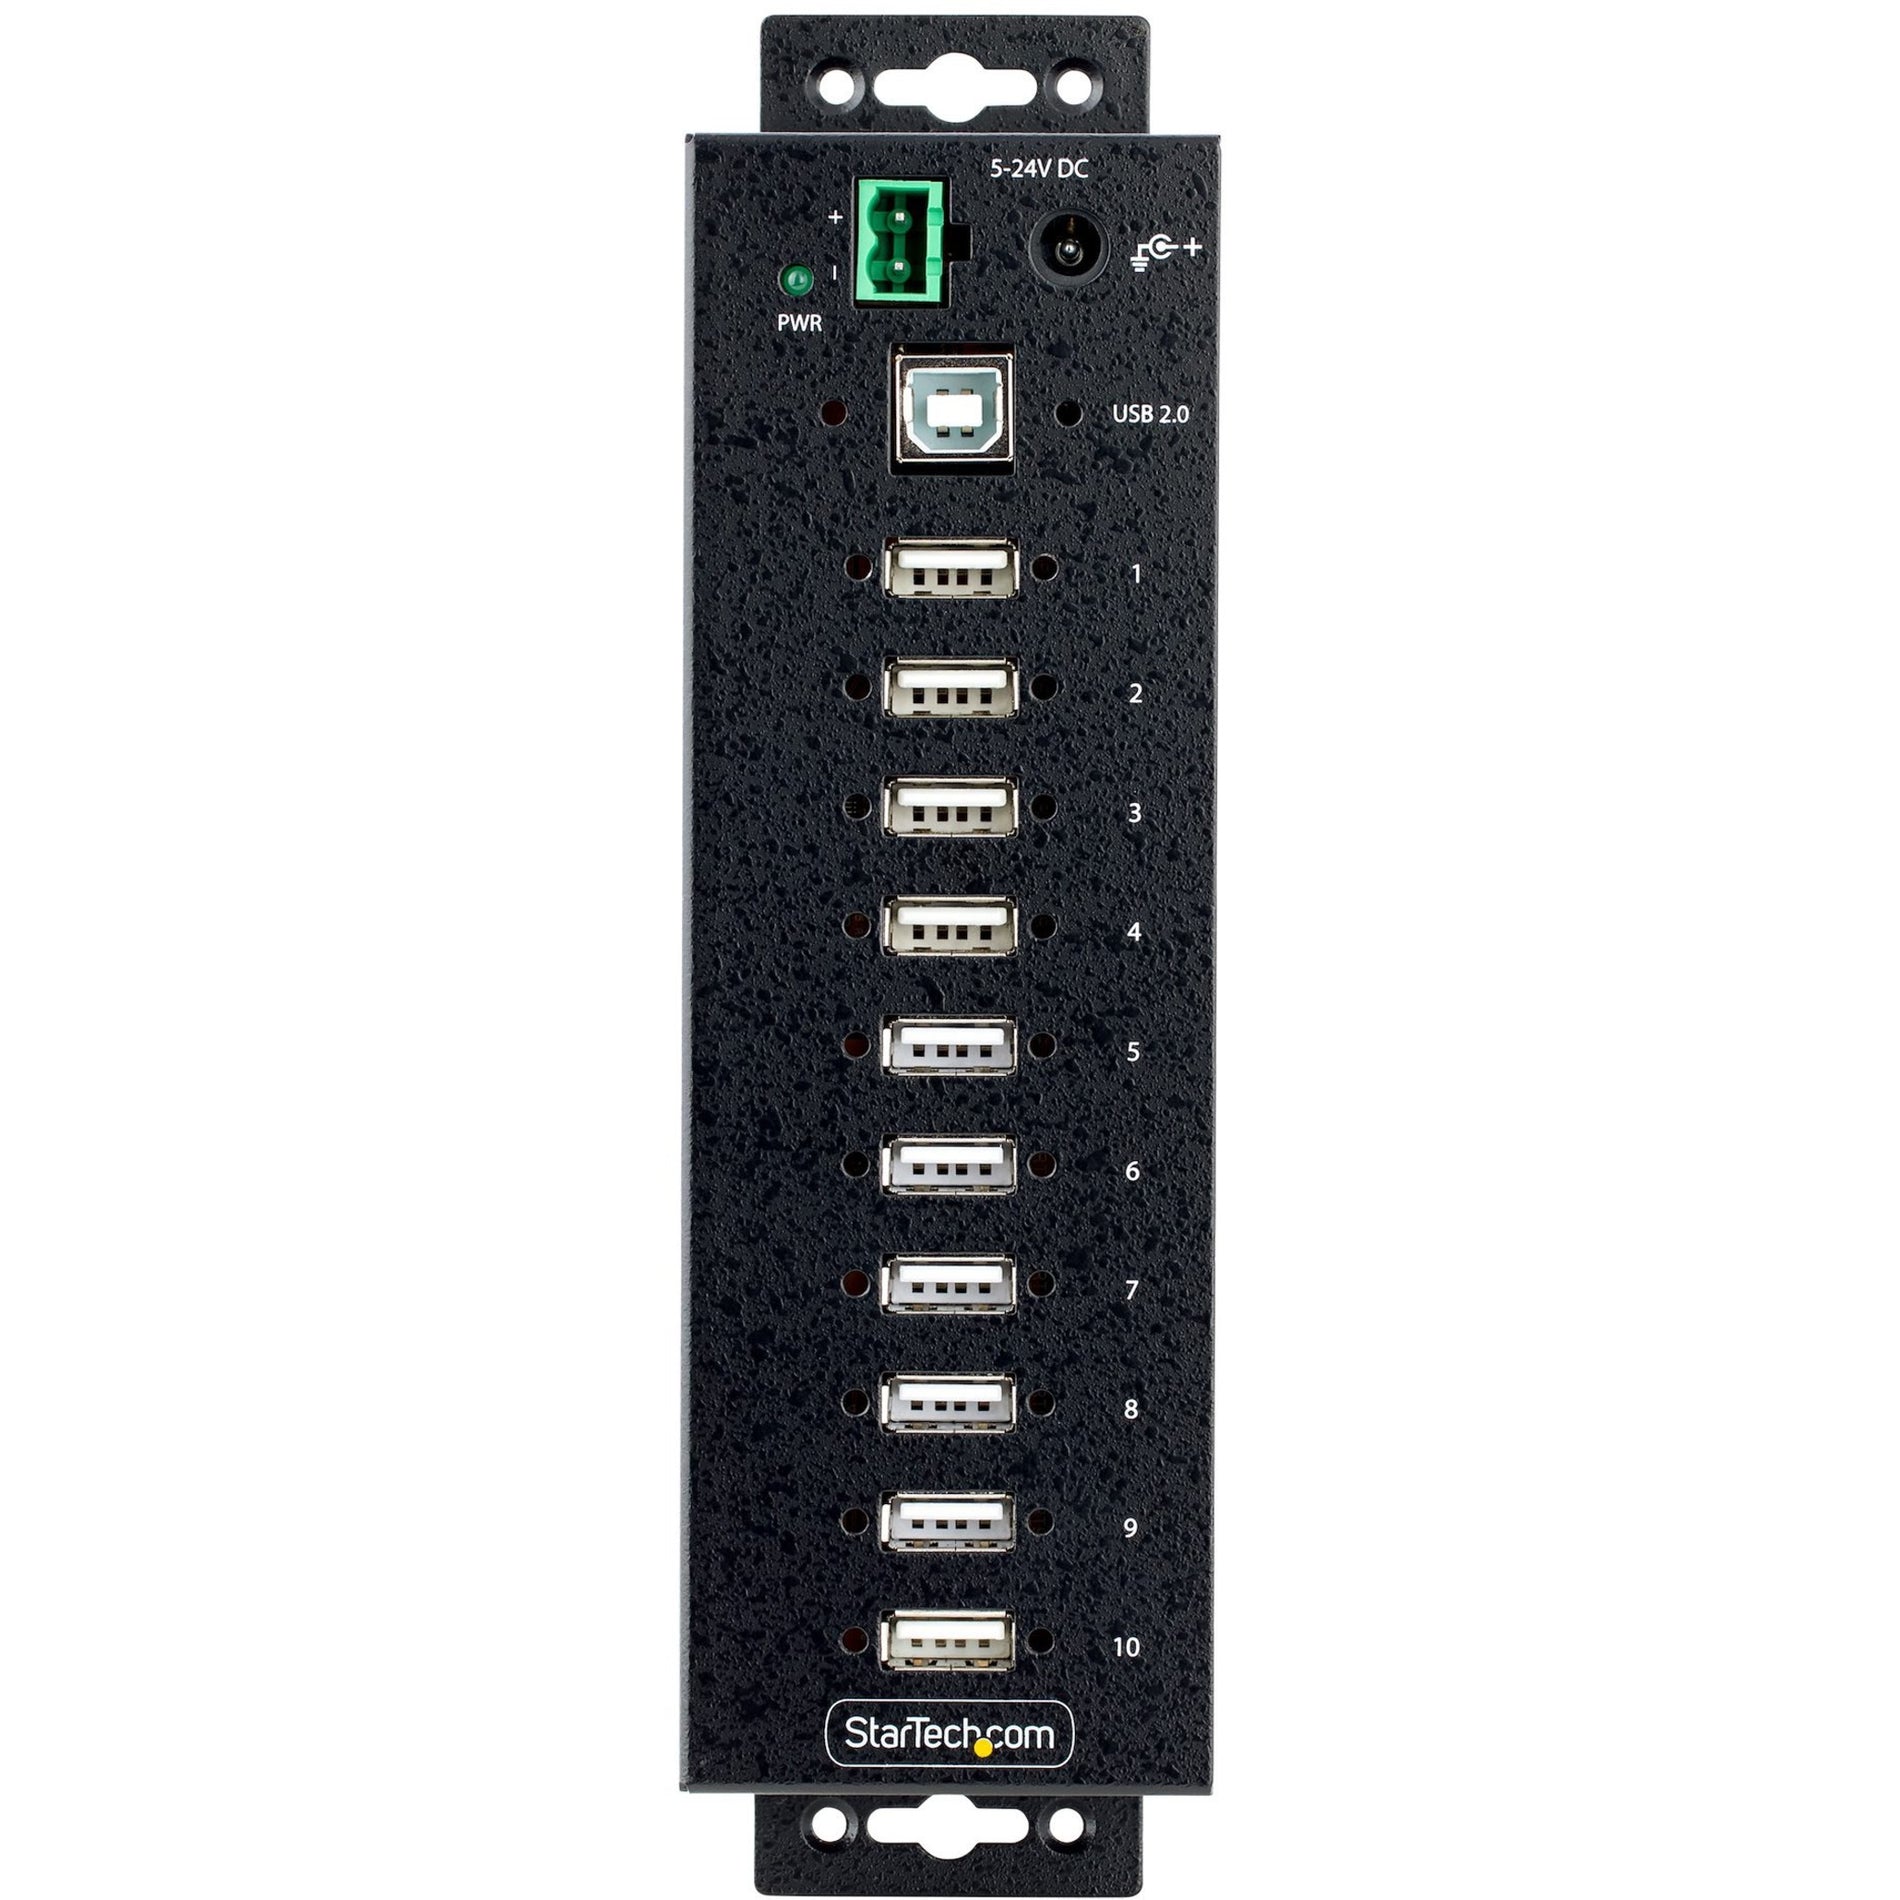 StarTech.com USB210AIND-USB-A-HUB Industrial USB Hub, 10 USB 2.0 Ports, TAA Compliant